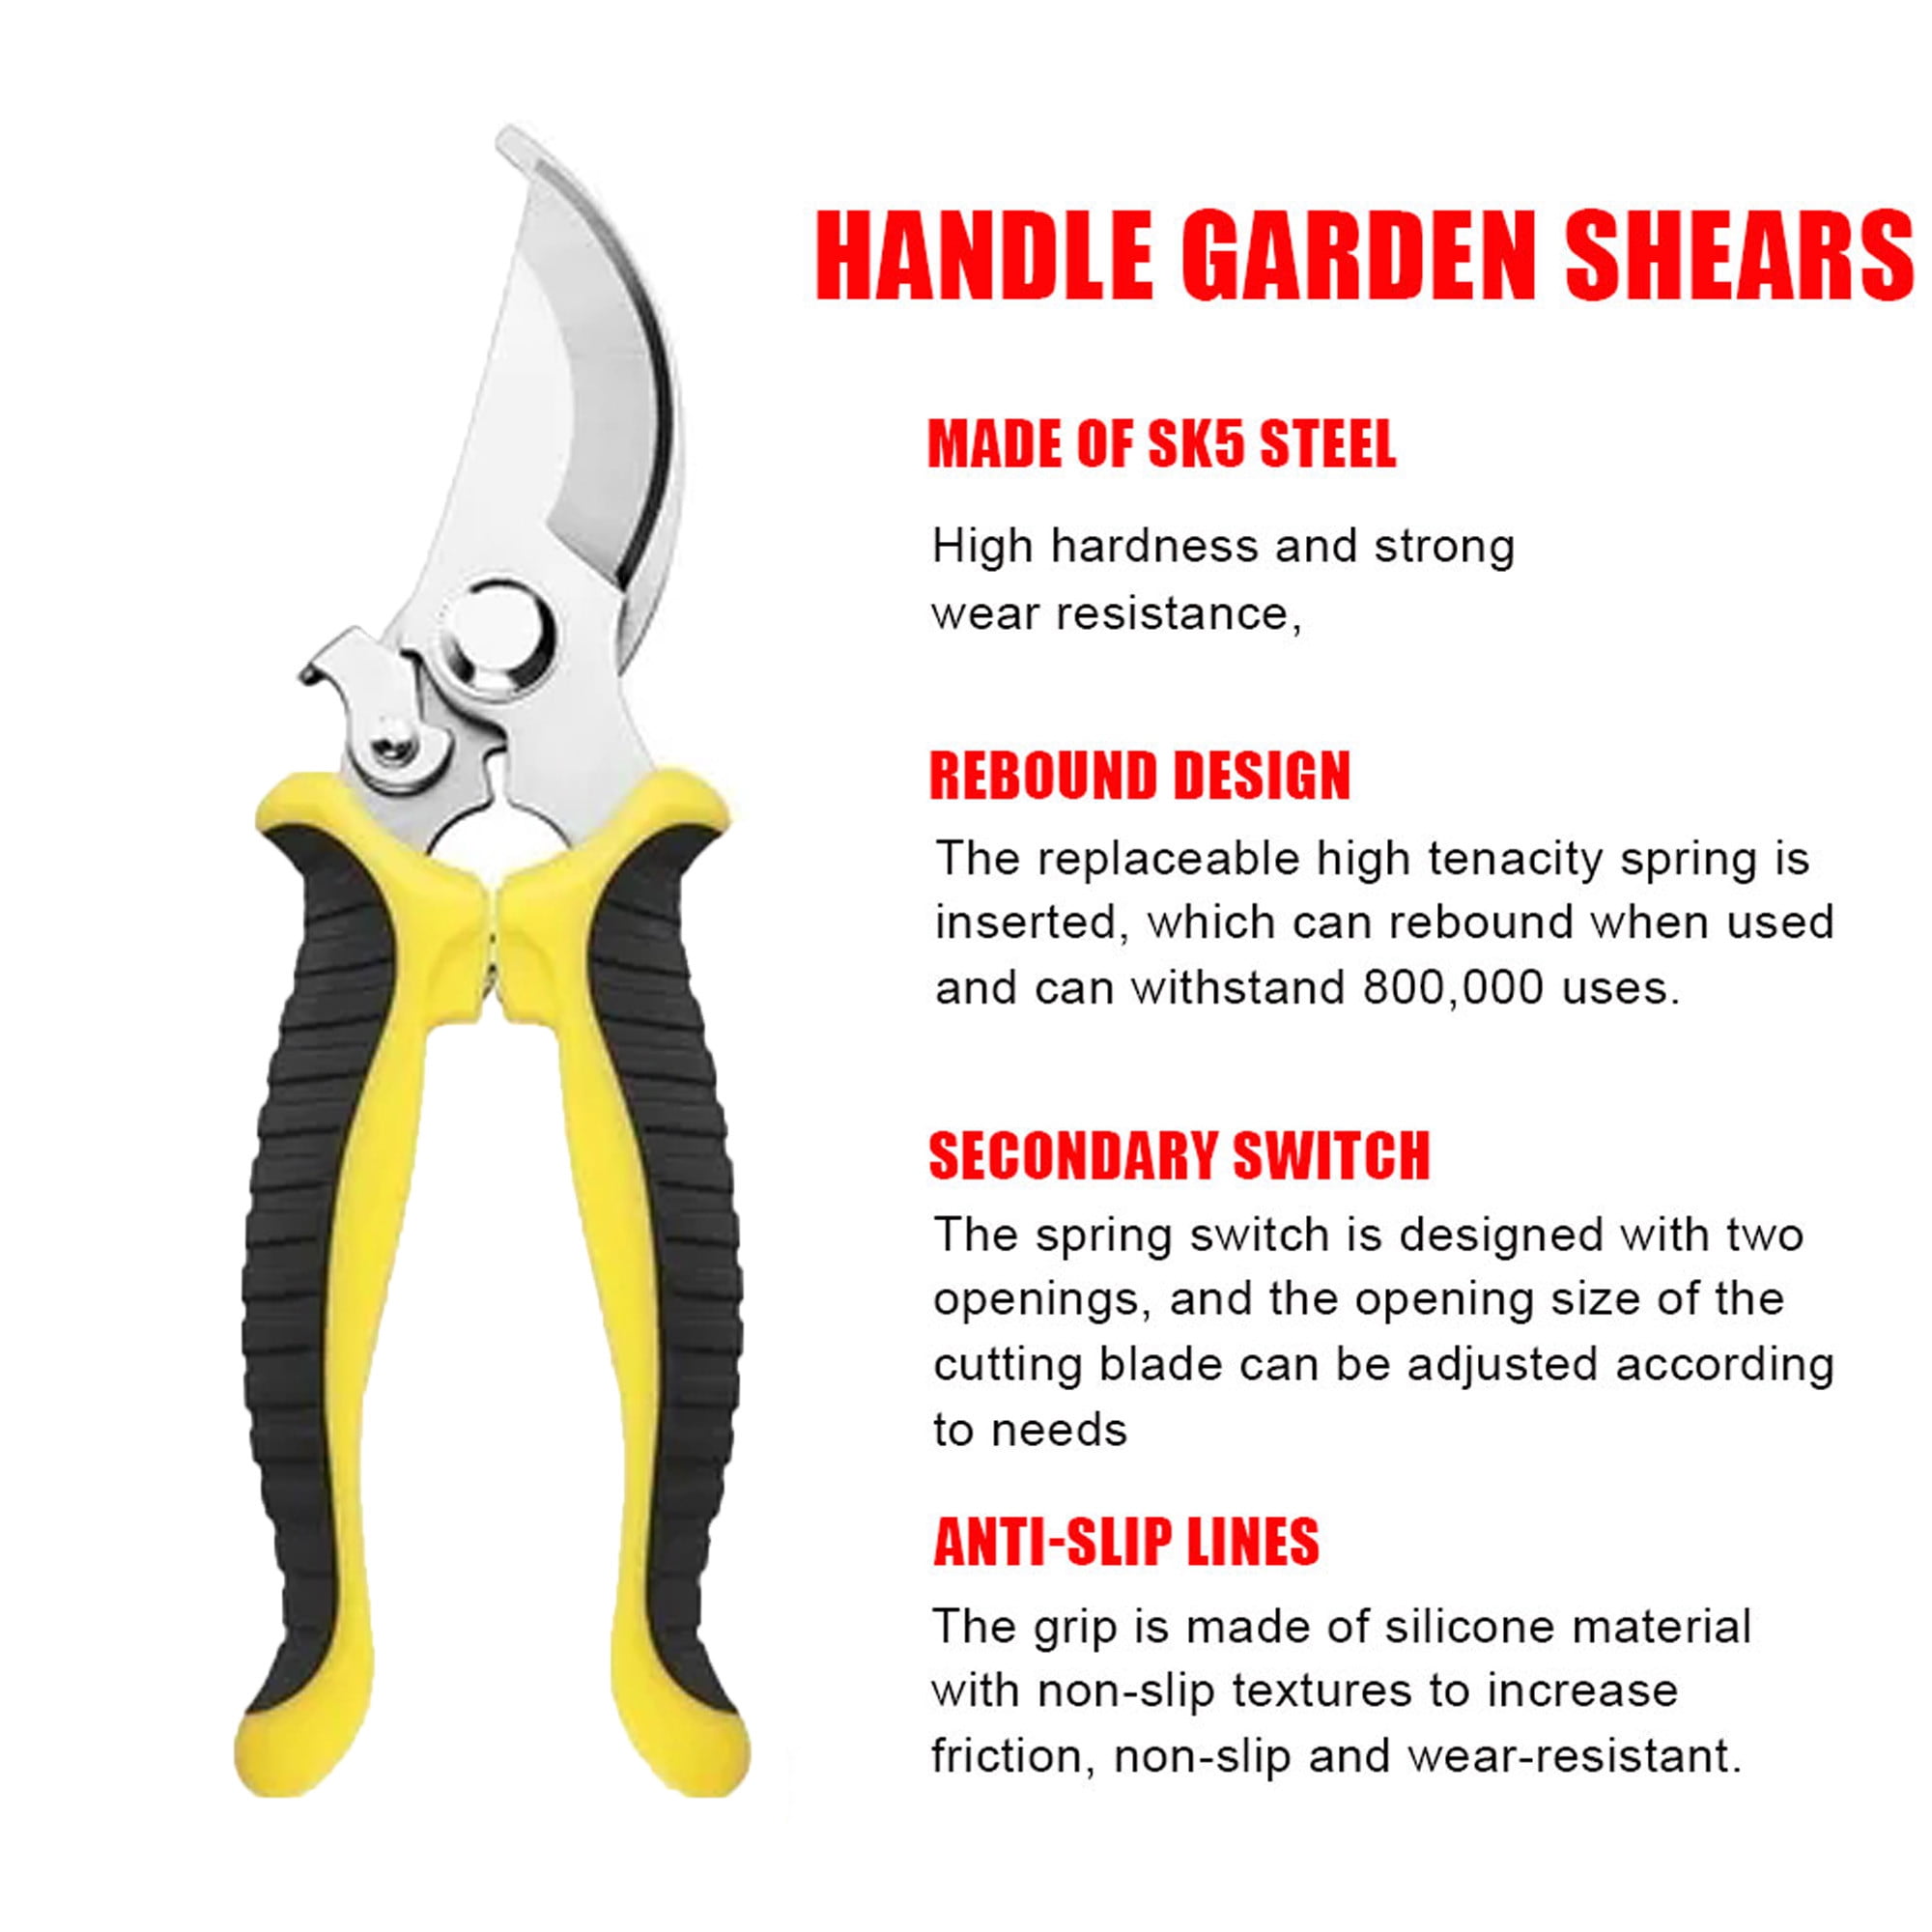 Secateurs Gardening Scissors, Heavy Duty Pruning Shears Gardening Scissors  For Cutting And Trimming Tree Branch, Herb, Rose, Flower - Temu